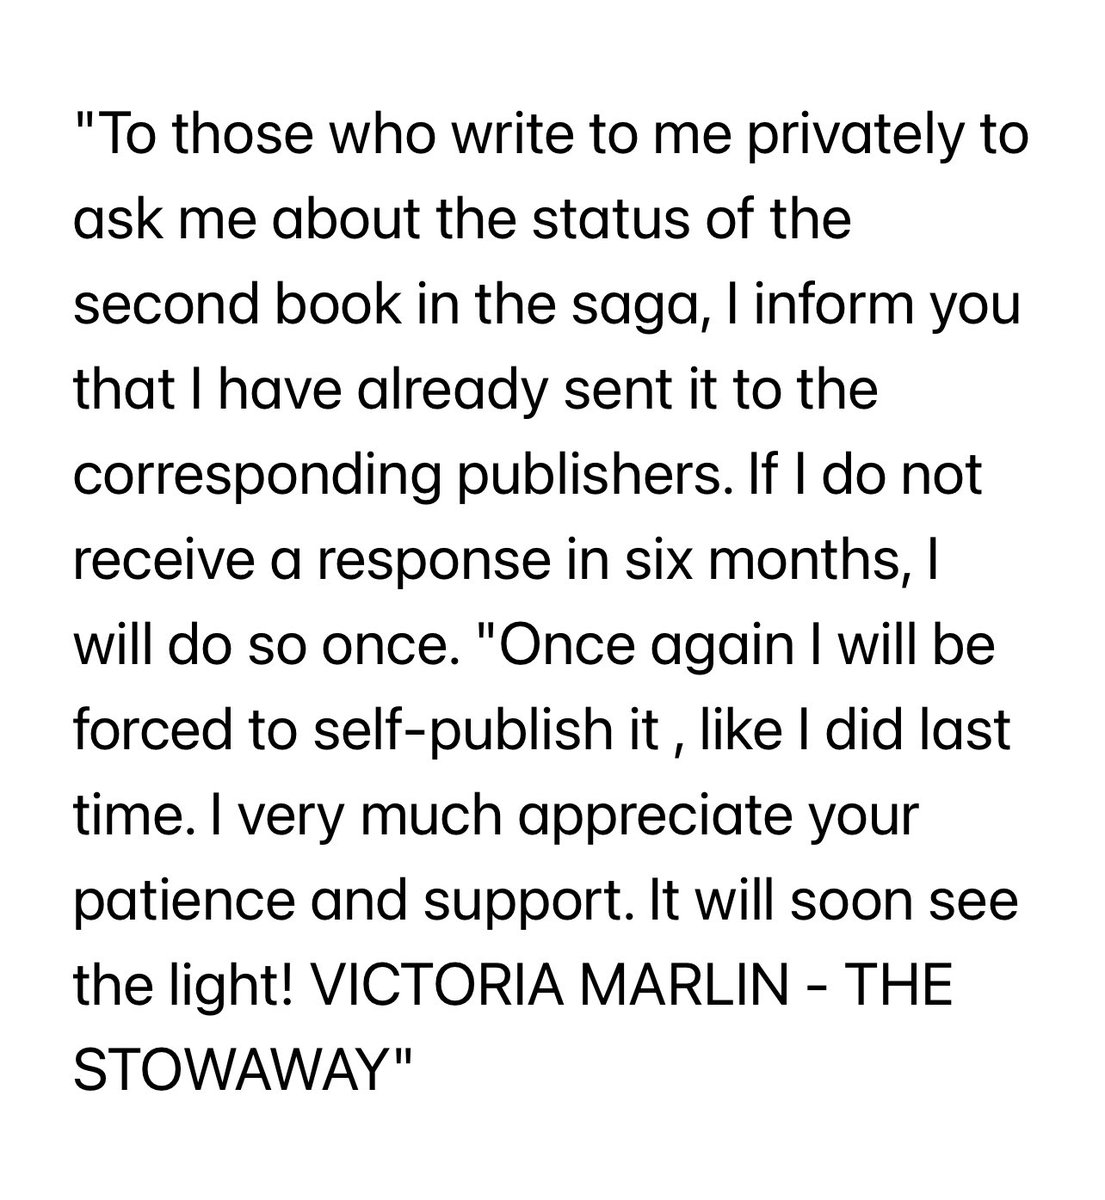 Coming soon: VICTORIA MARLIN 2 - THE STOWAWAY.